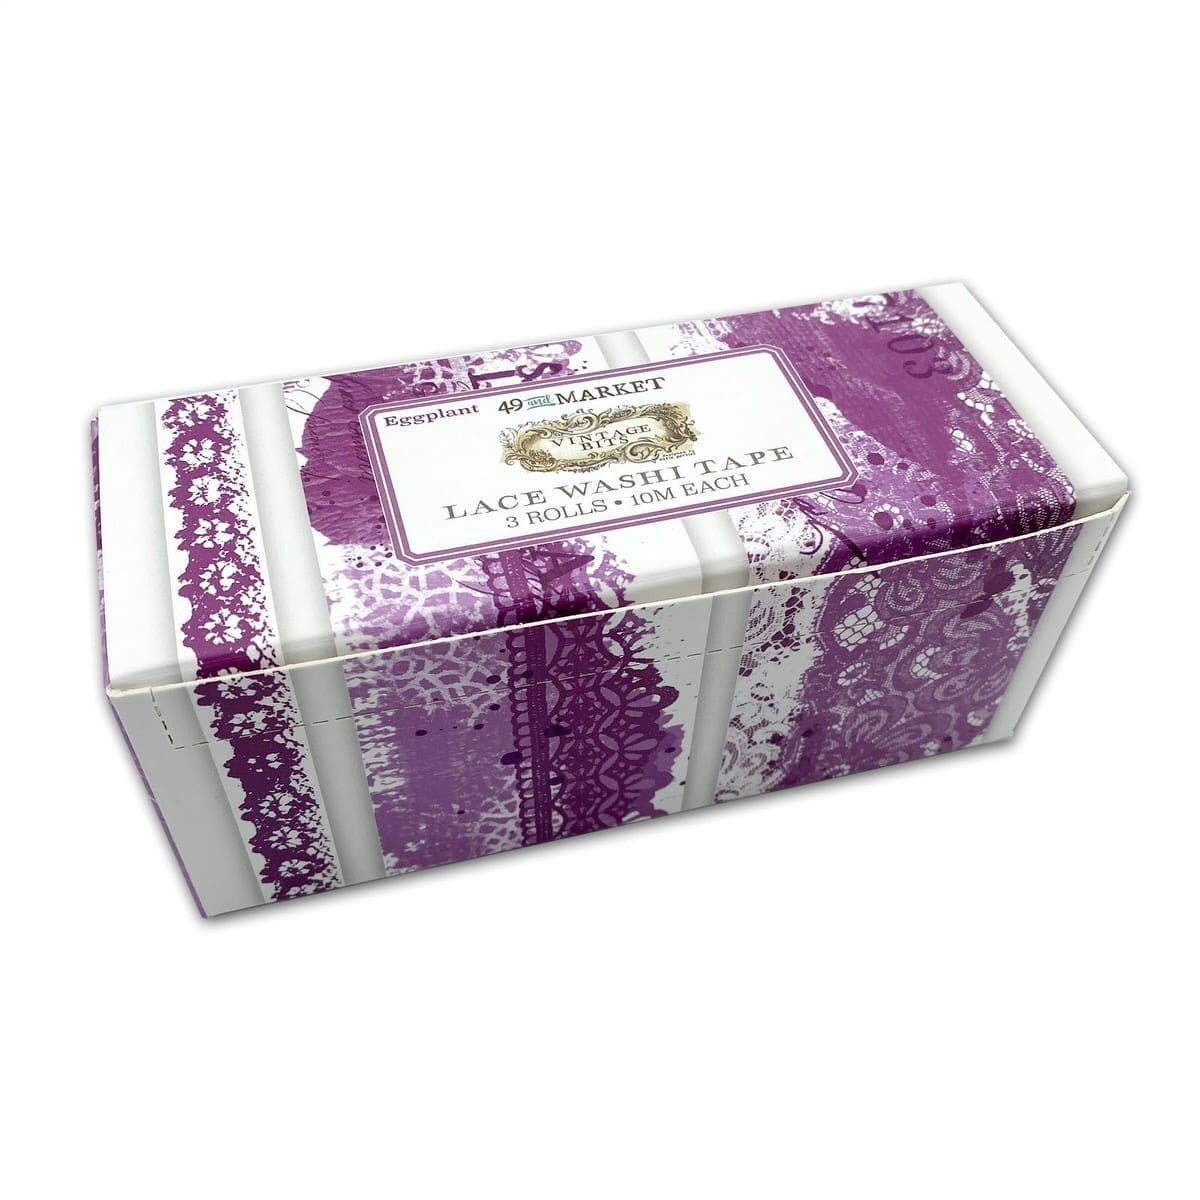 Washi tape Lace 3-pack - Eggplant - 49 and Market - Tidformera